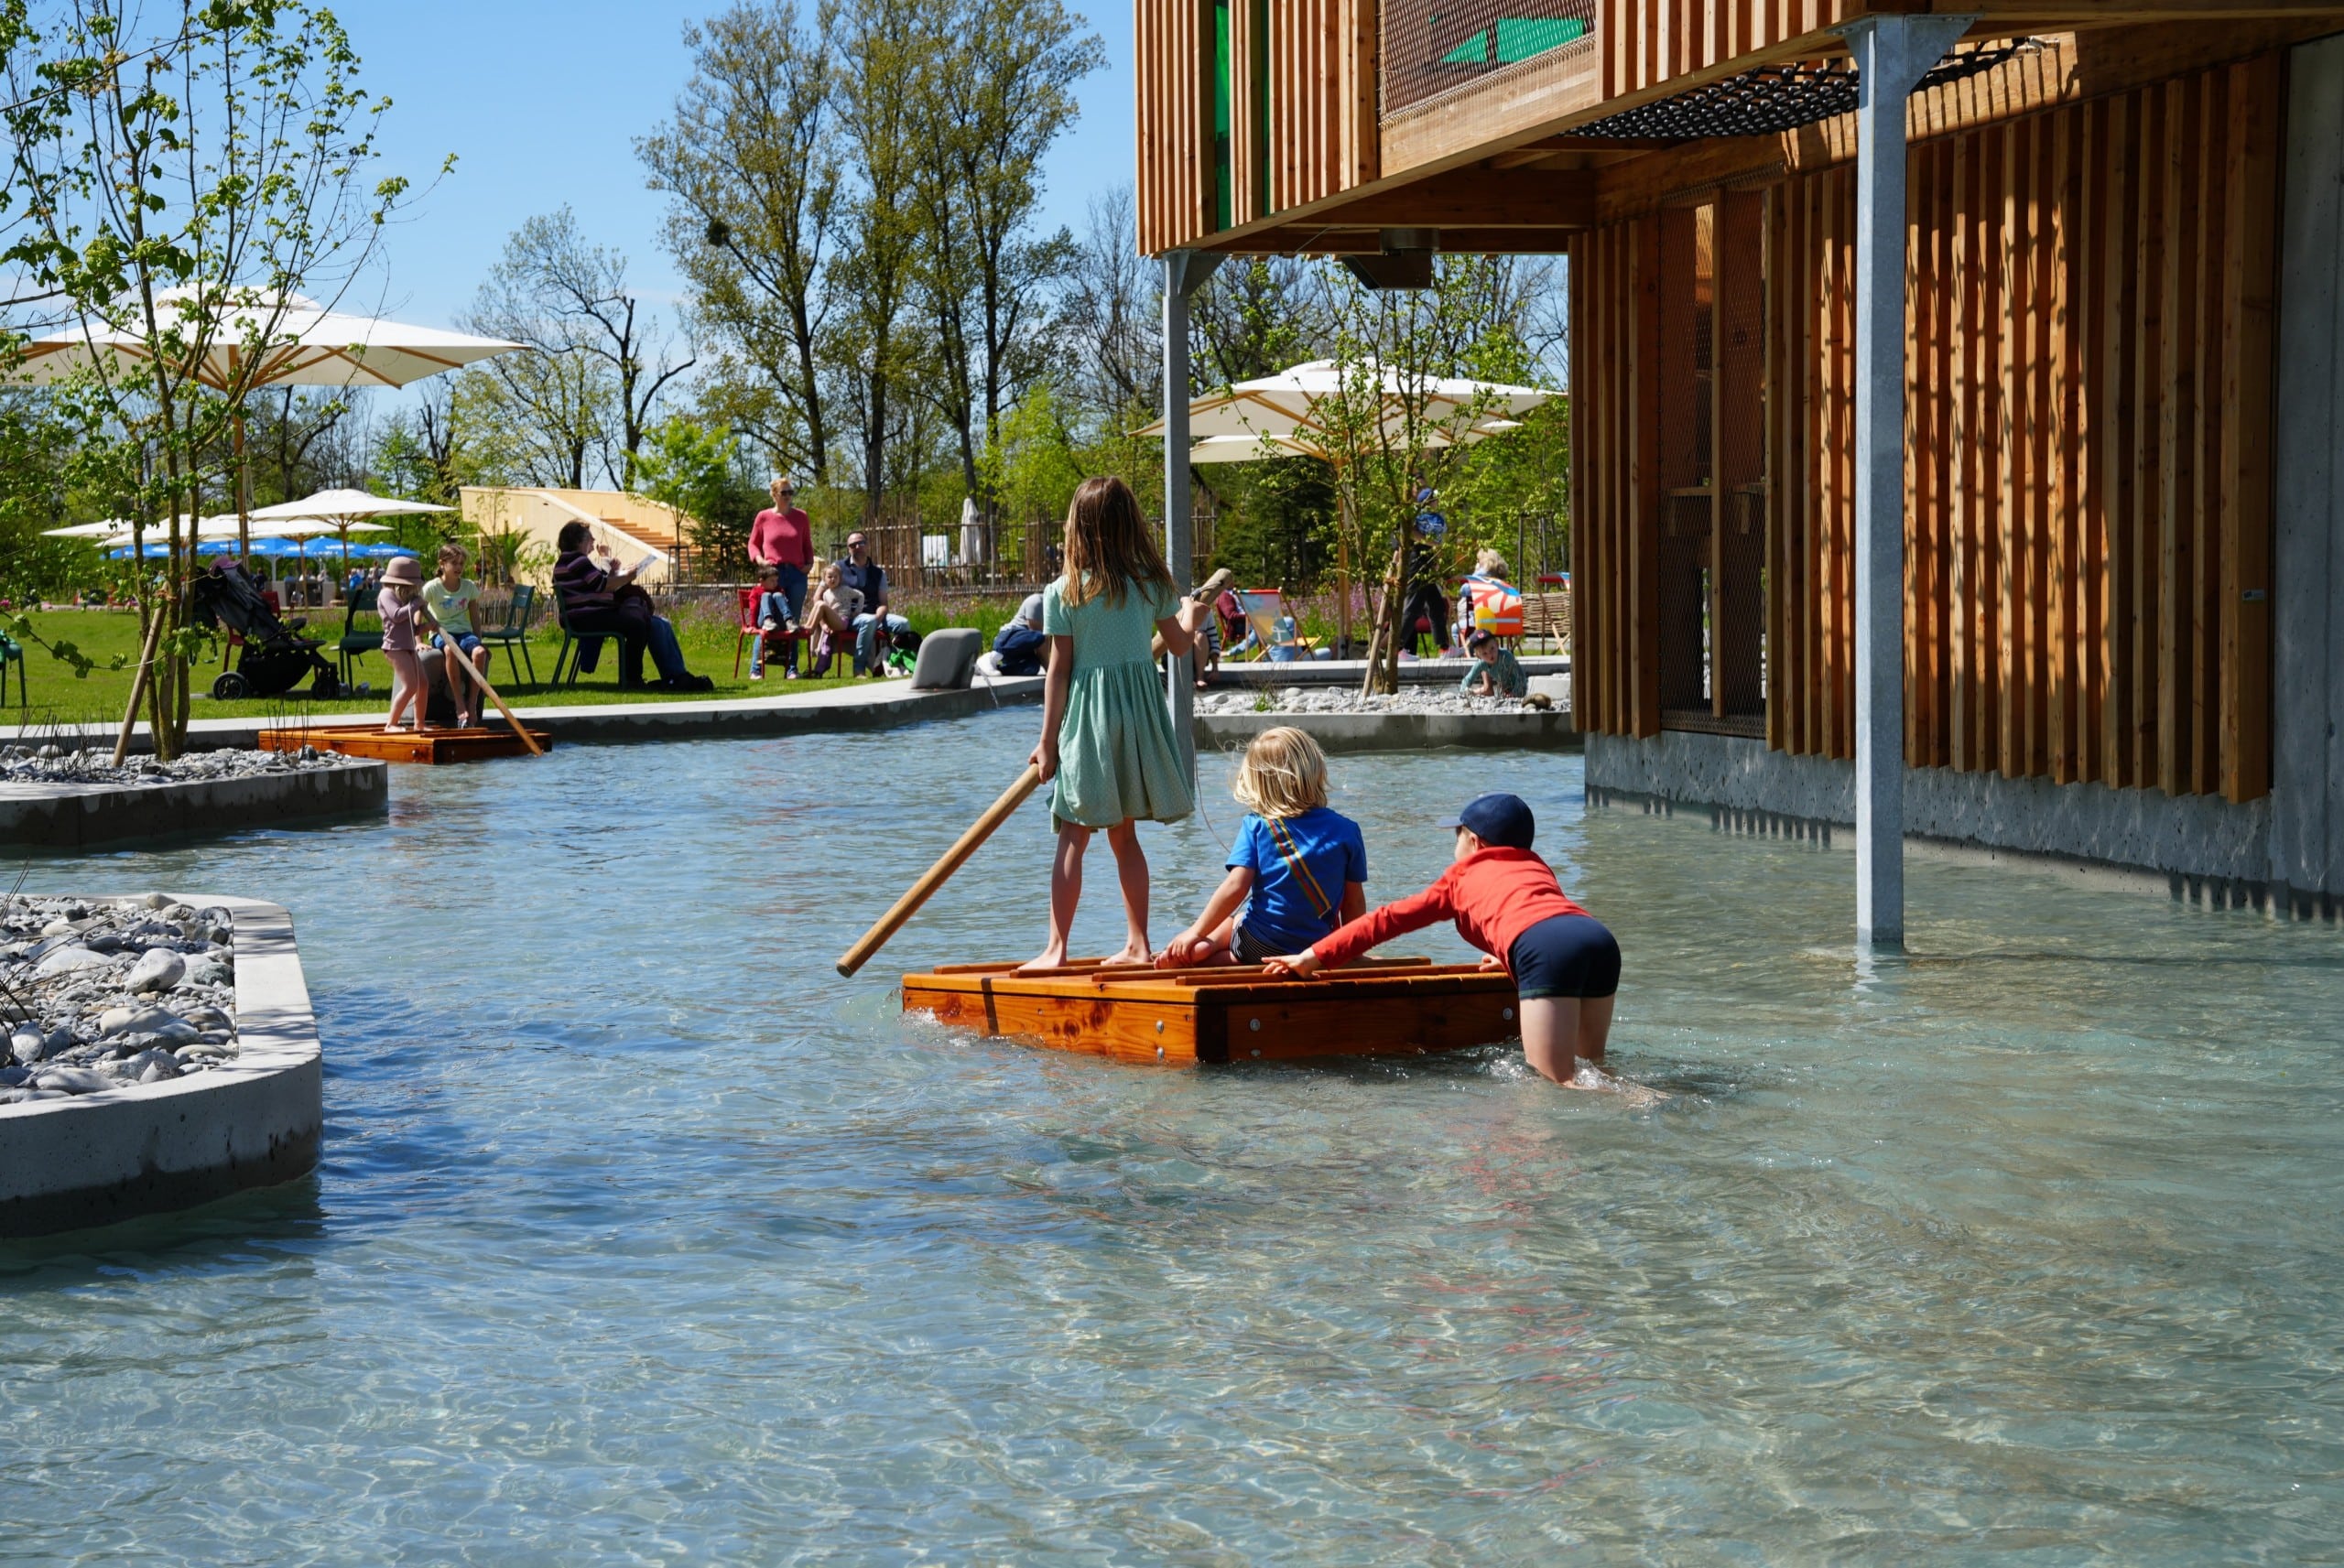 Kinderspielplätze, wie etwa dieser hier rund um das Thema Wasser, machen Wangen künftig attraktiver und lassen den Fluss erlebbar werden. Credit: Landesgartenschau Wangen im Allgäu 2024